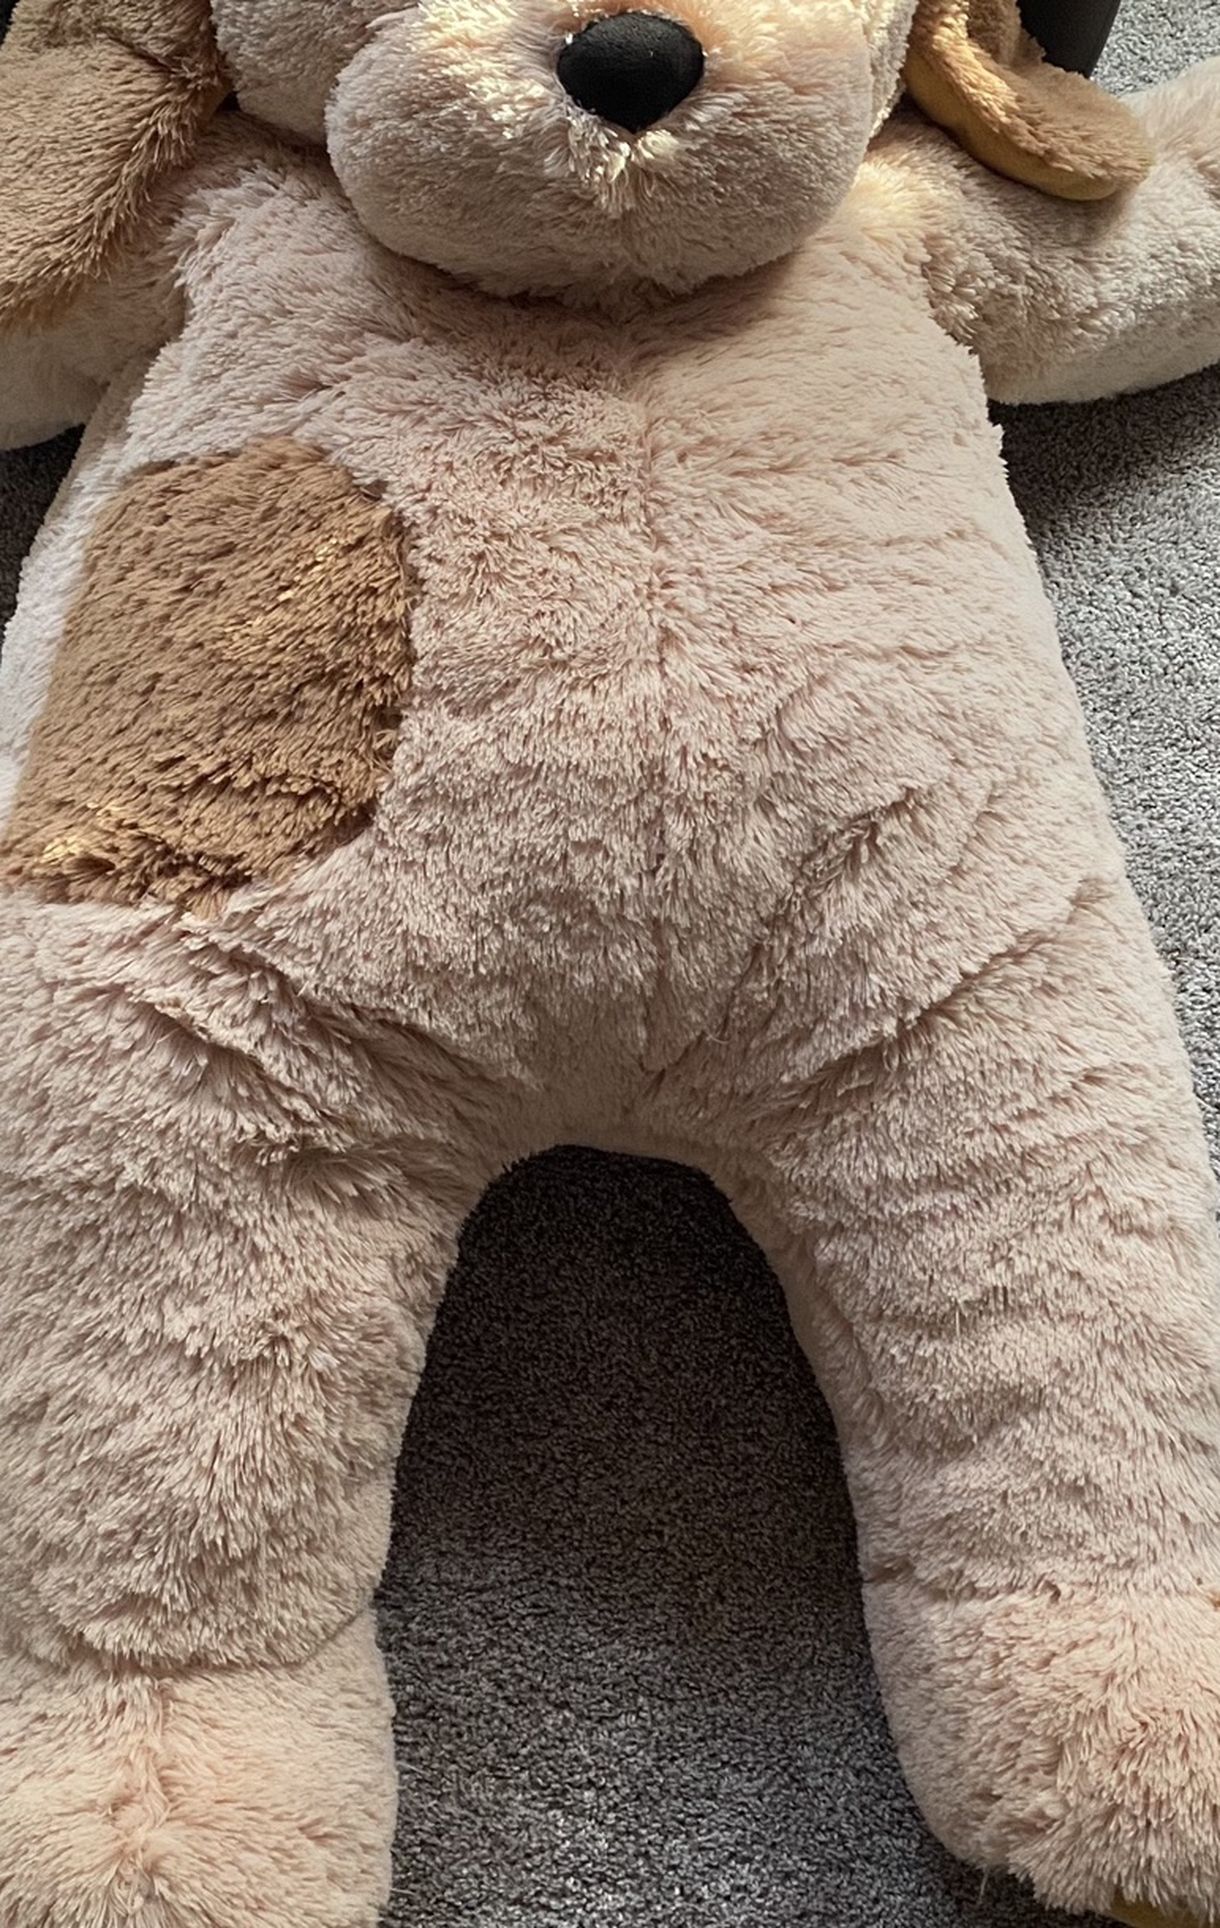 Teddy Bear Cuddle Puppy (Vermont Teddy Bear).